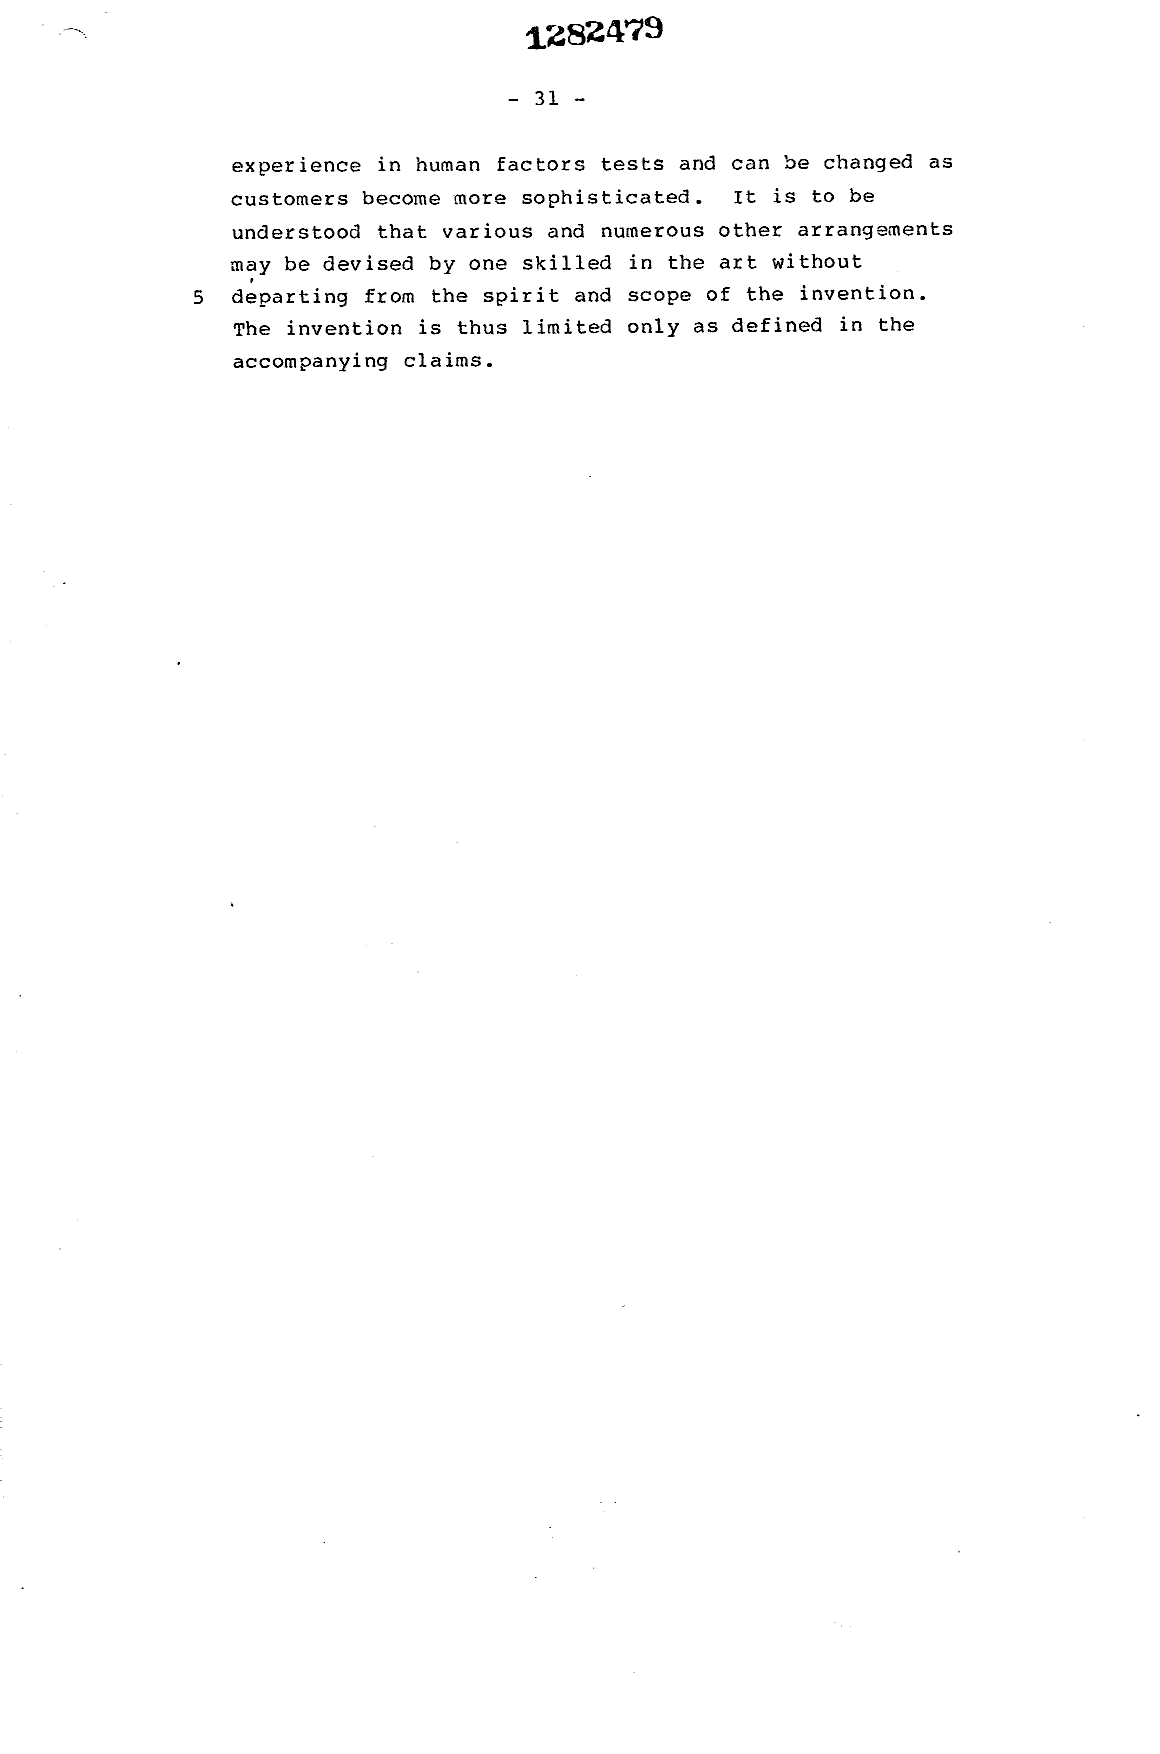 Canadian Patent Document 1282479. Description 19931019. Image 31 of 31